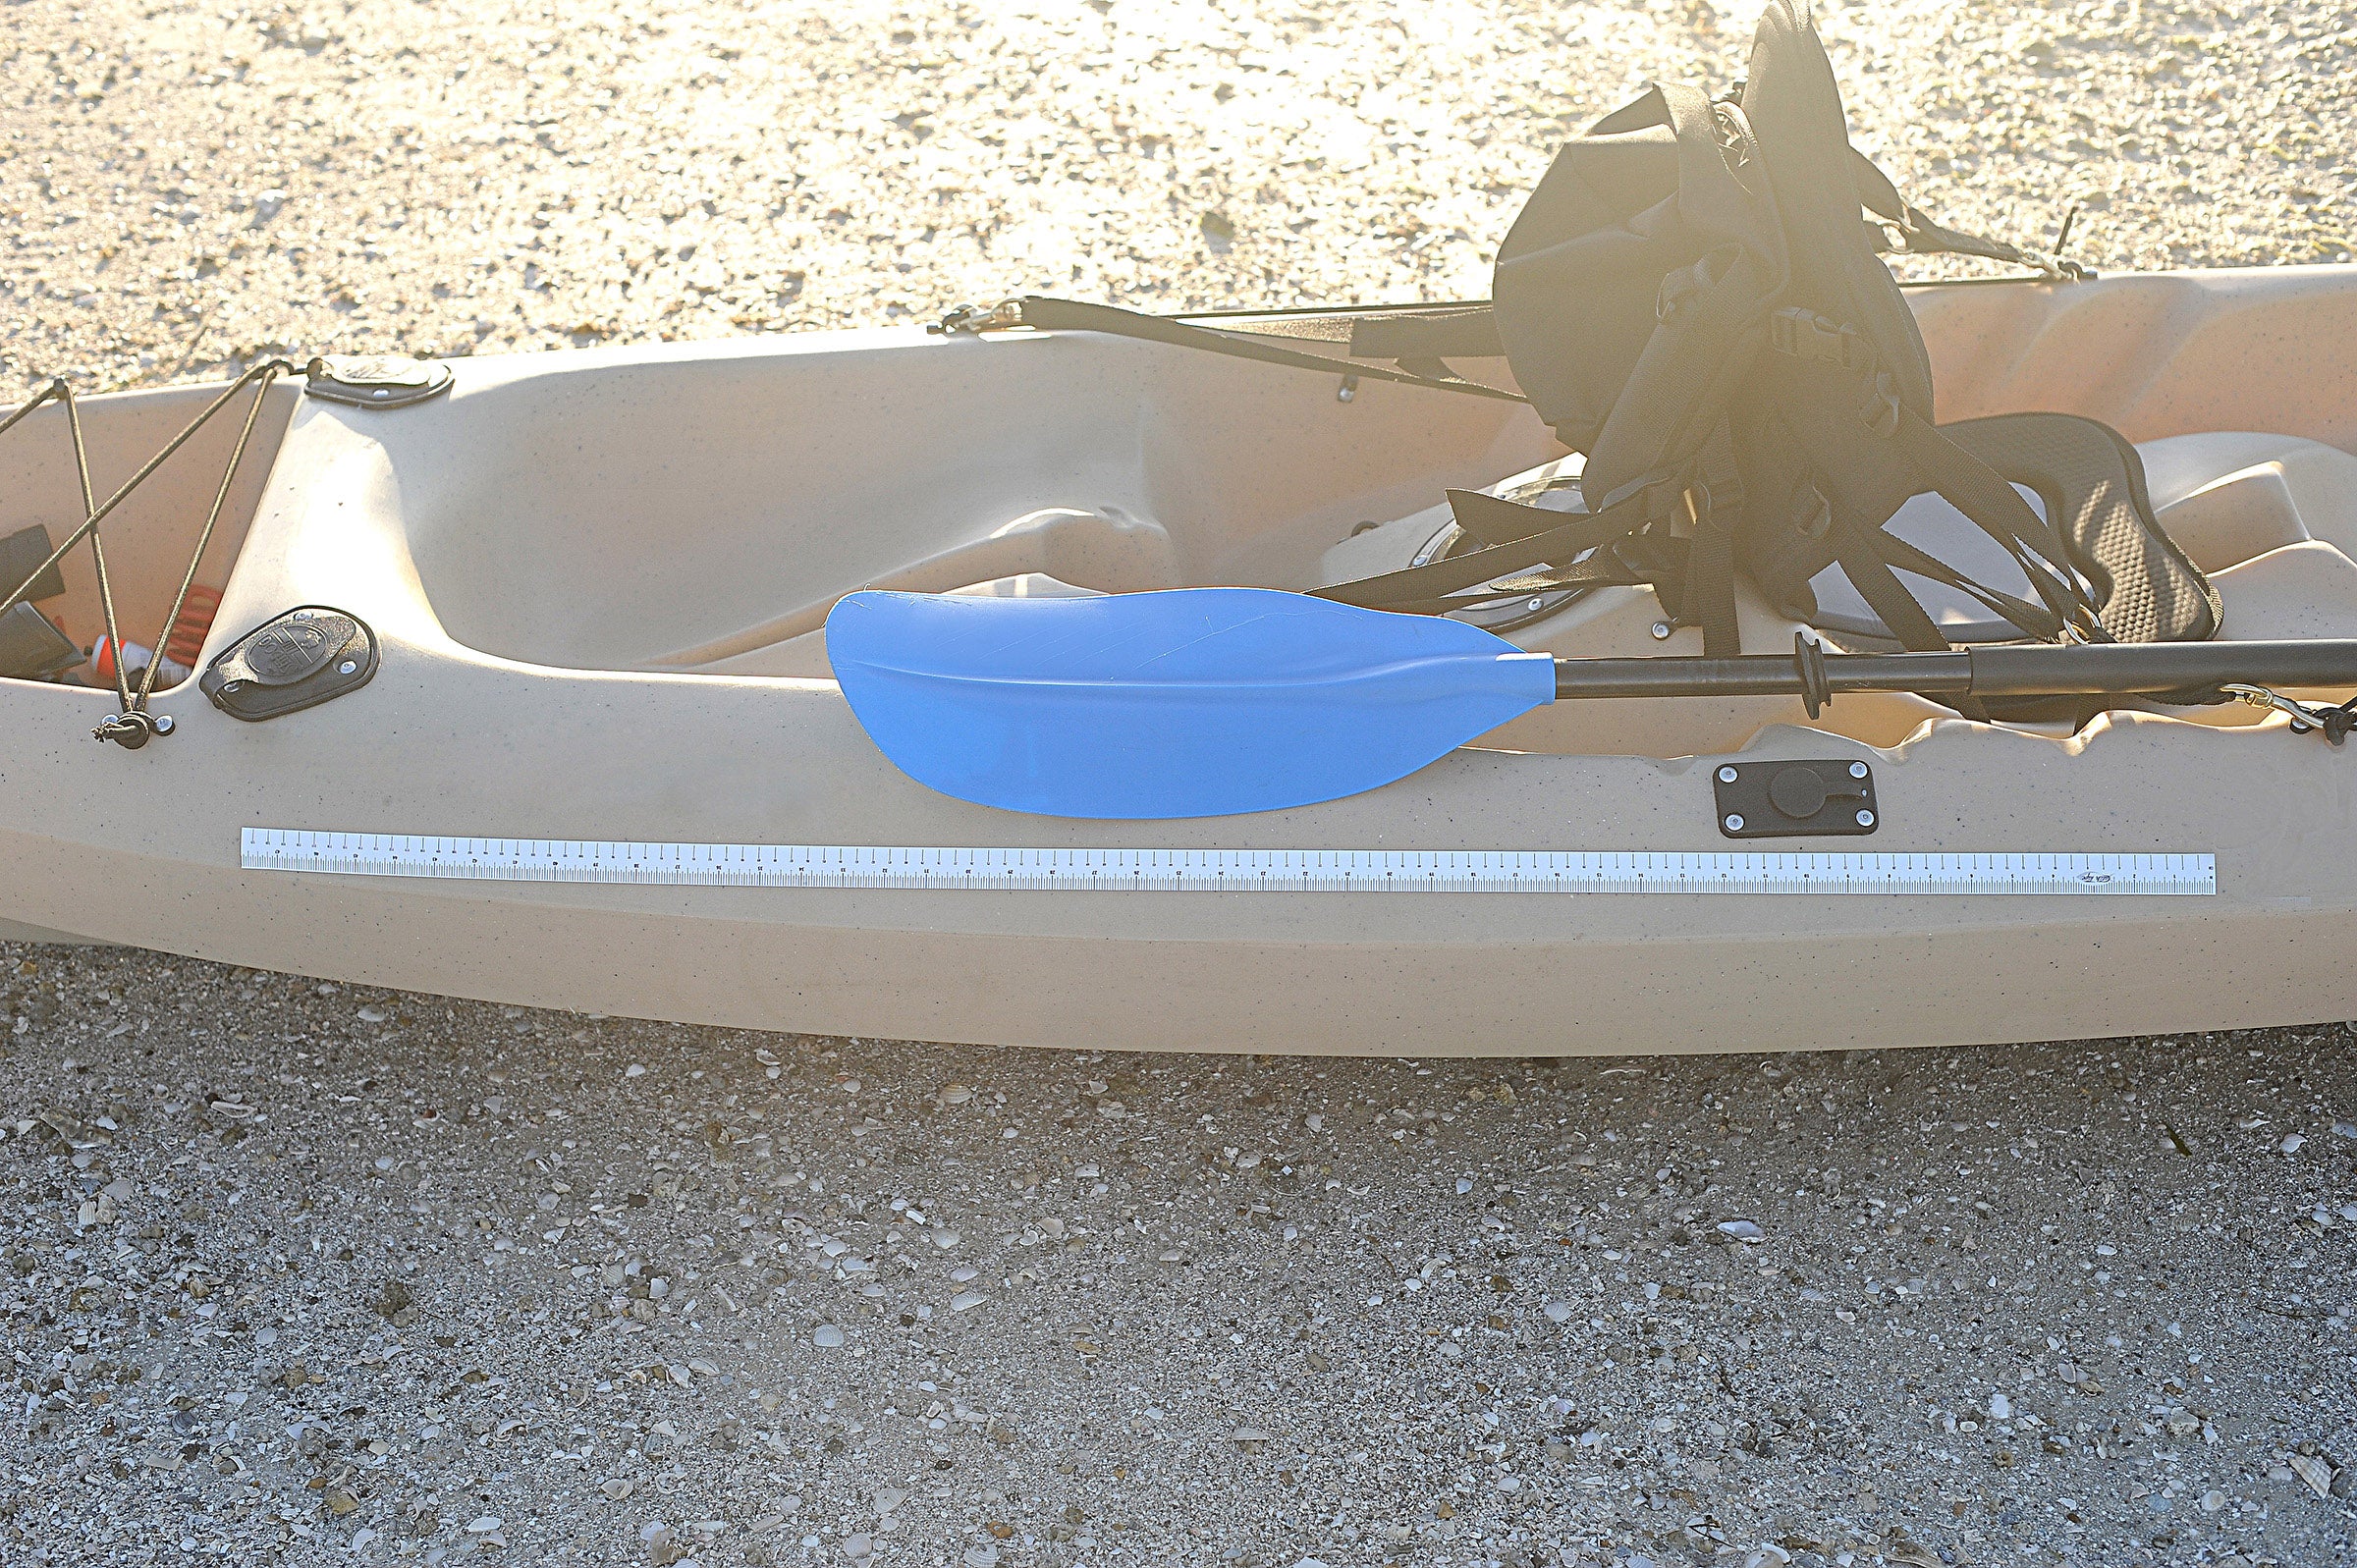 Fish measuring tape on kayak